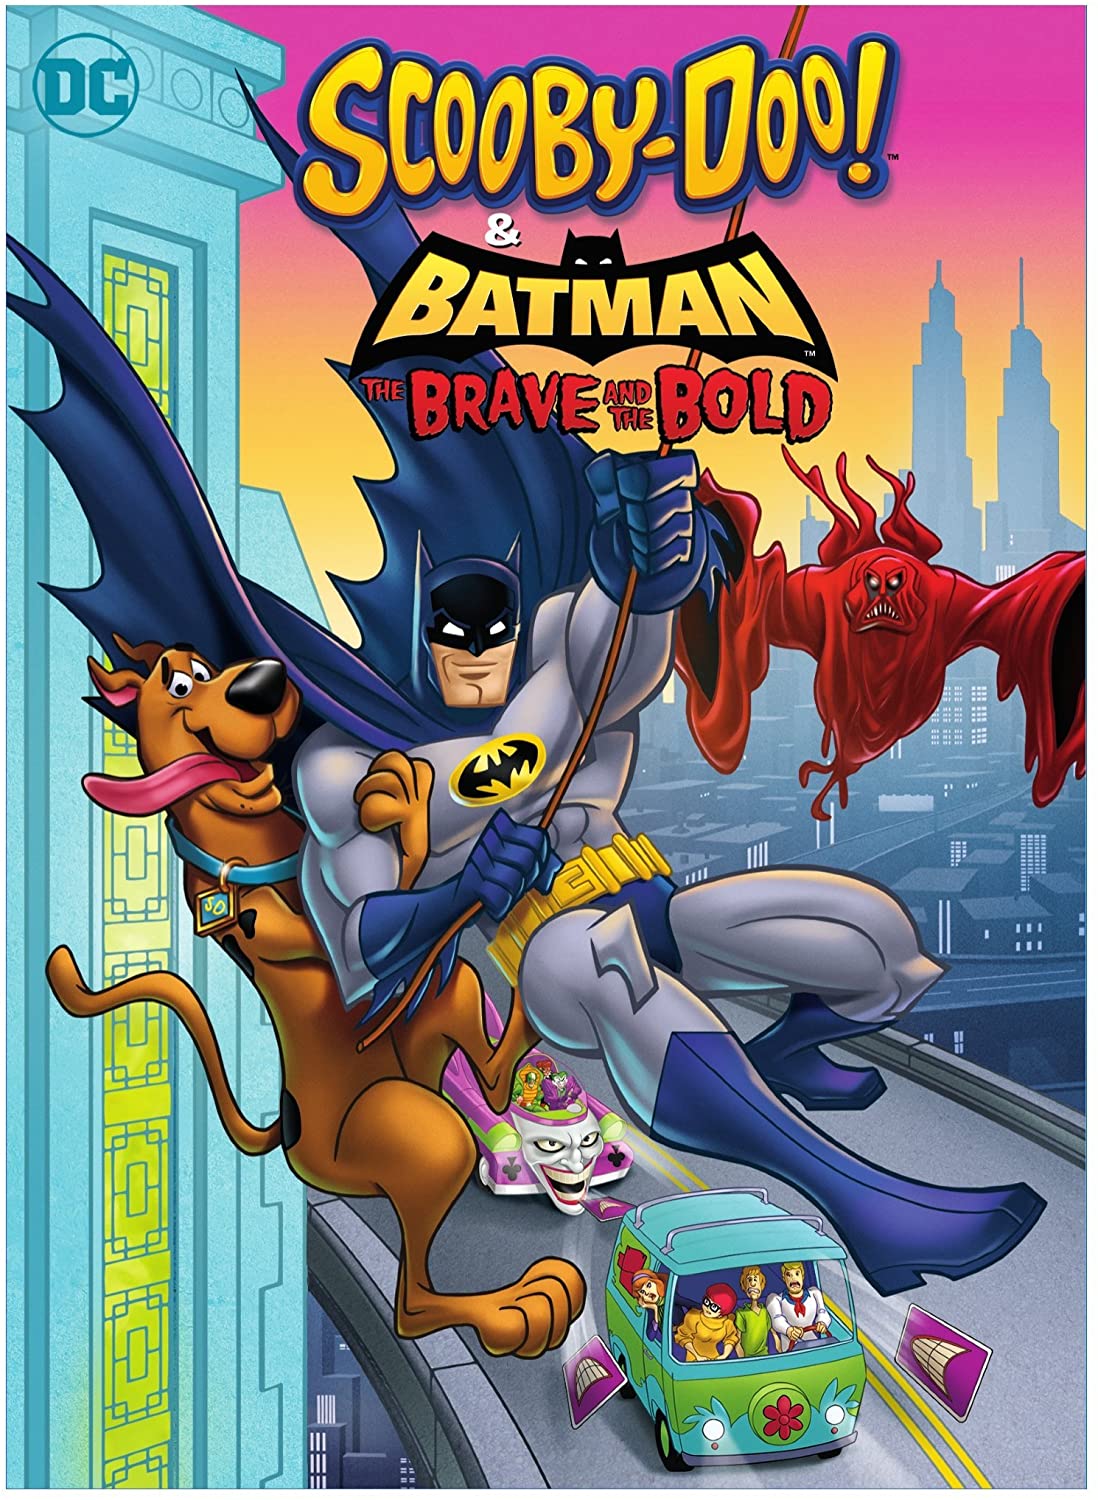 DC anuncia nueva serie de Batman coprotagonizada por Scooby-Doo